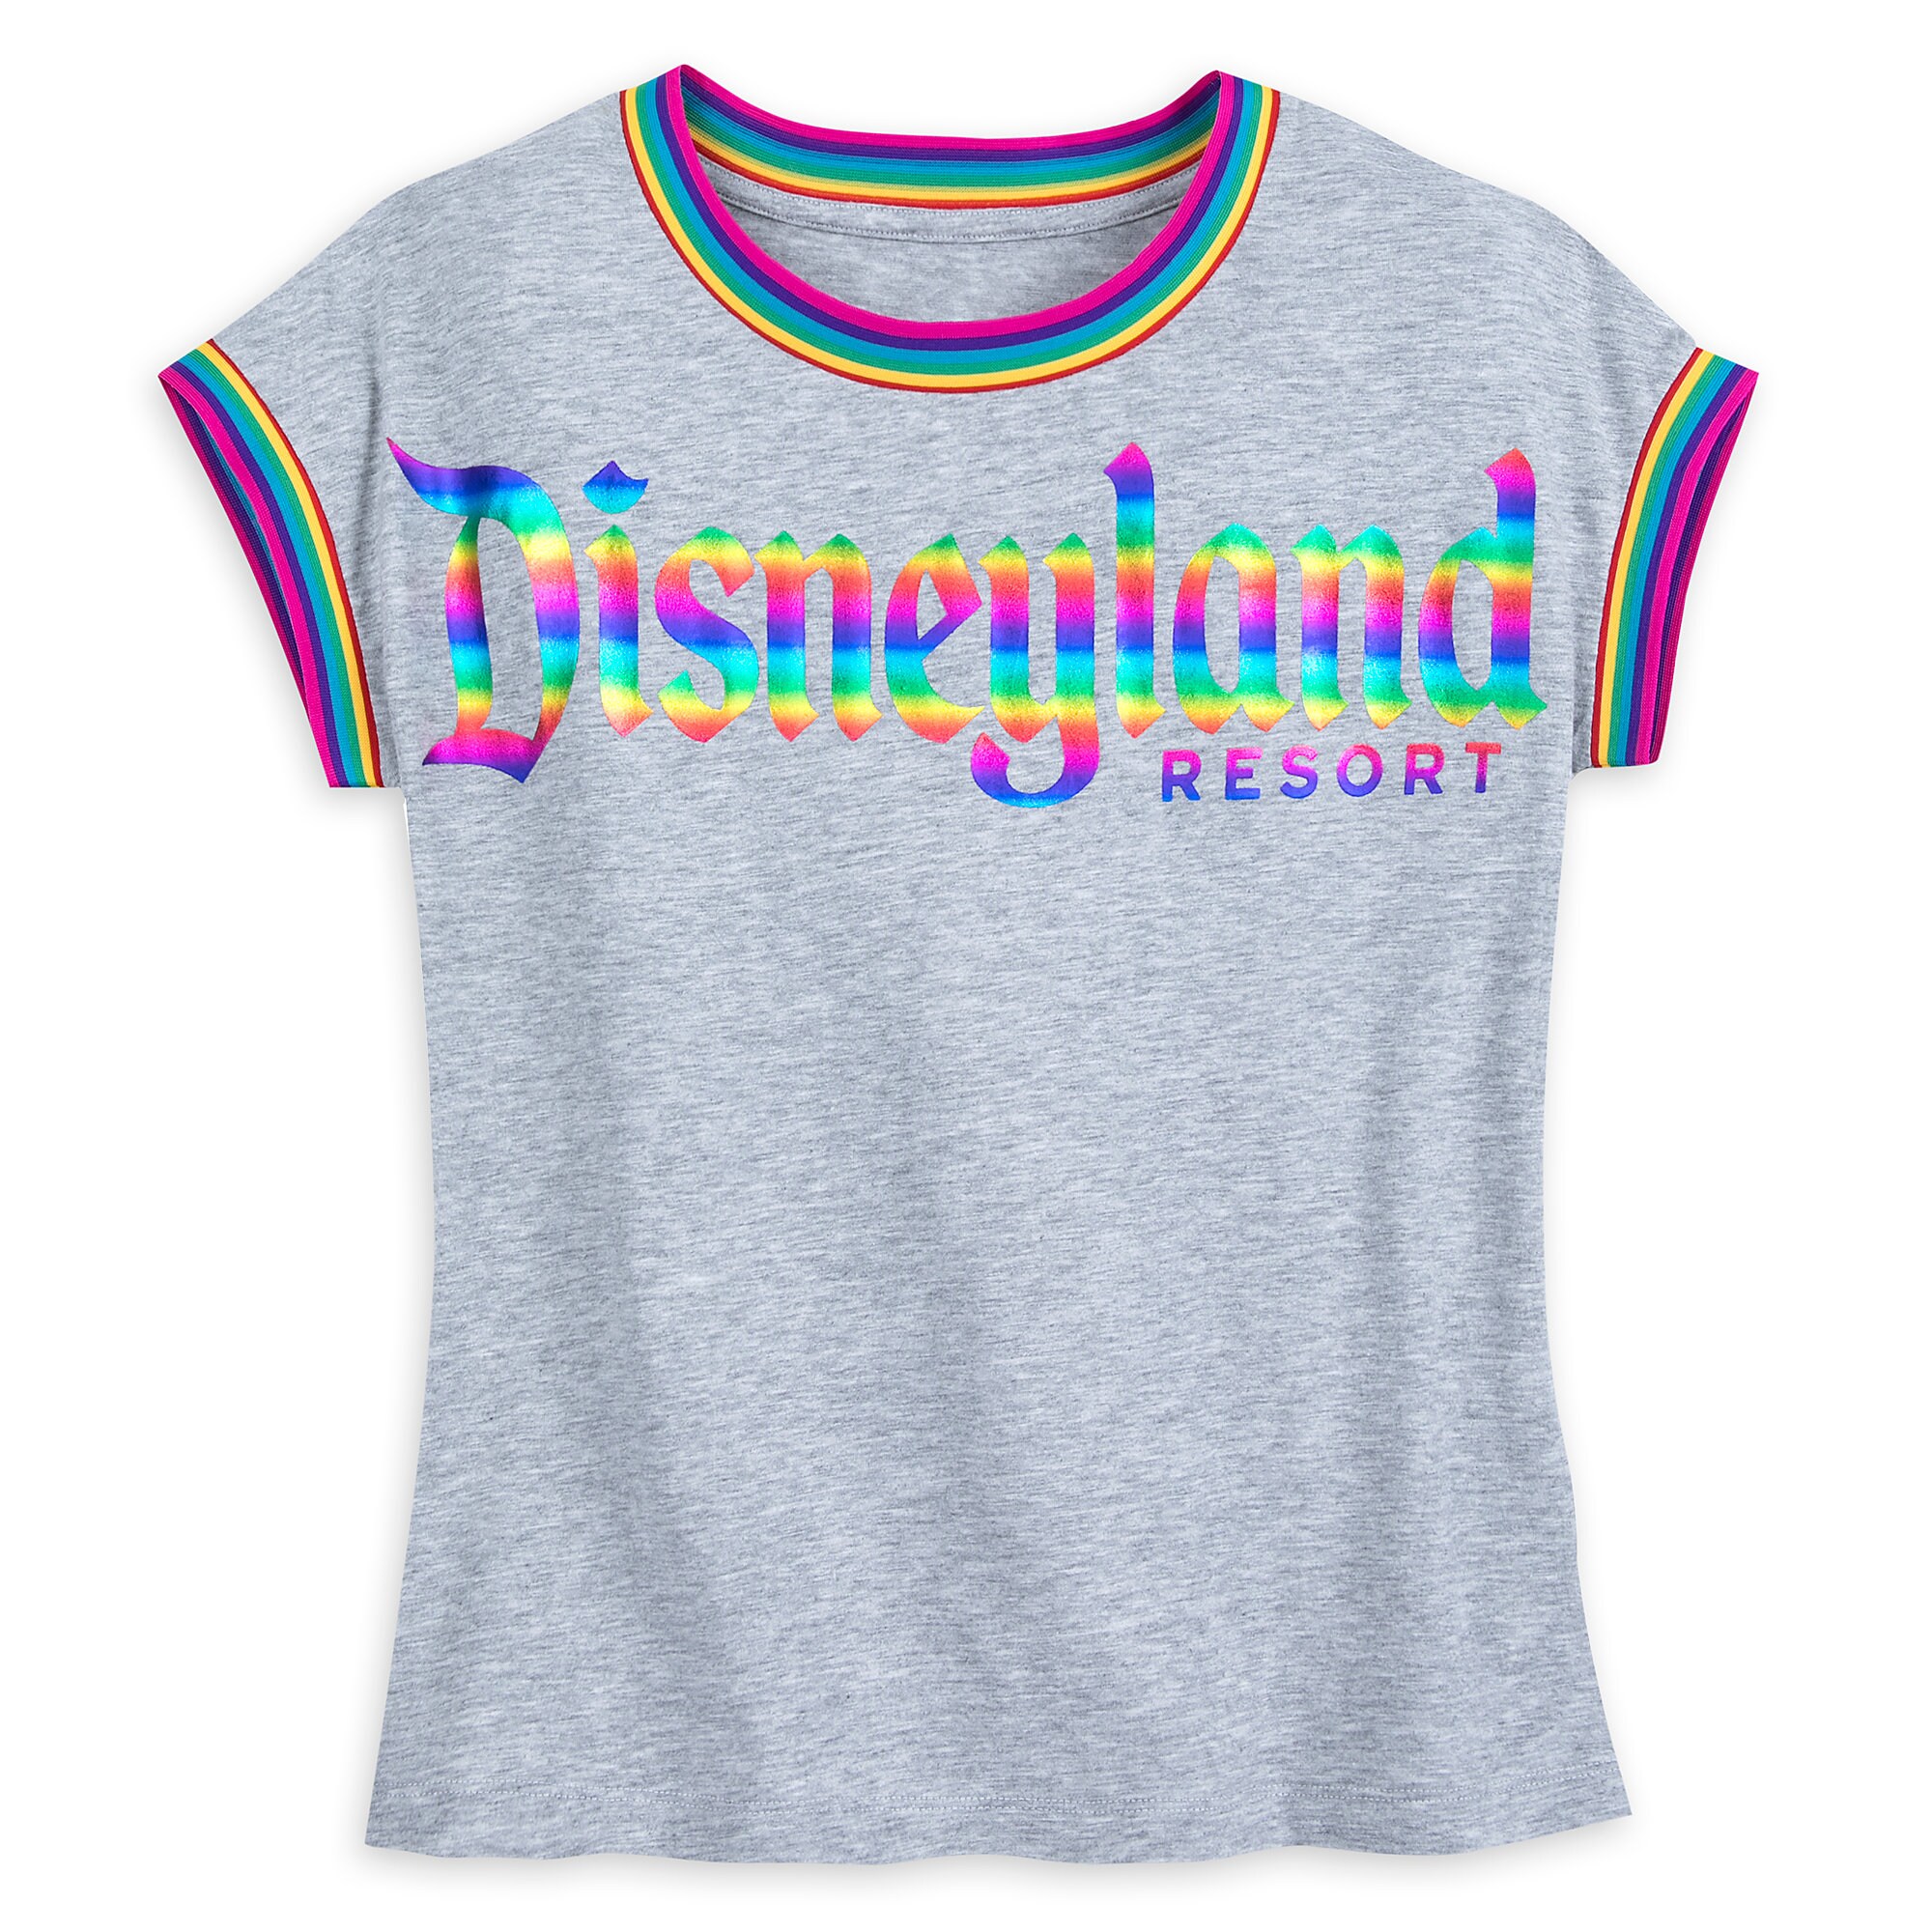 Disneyland Resort Rainbow Ringer T-Shirt for Women